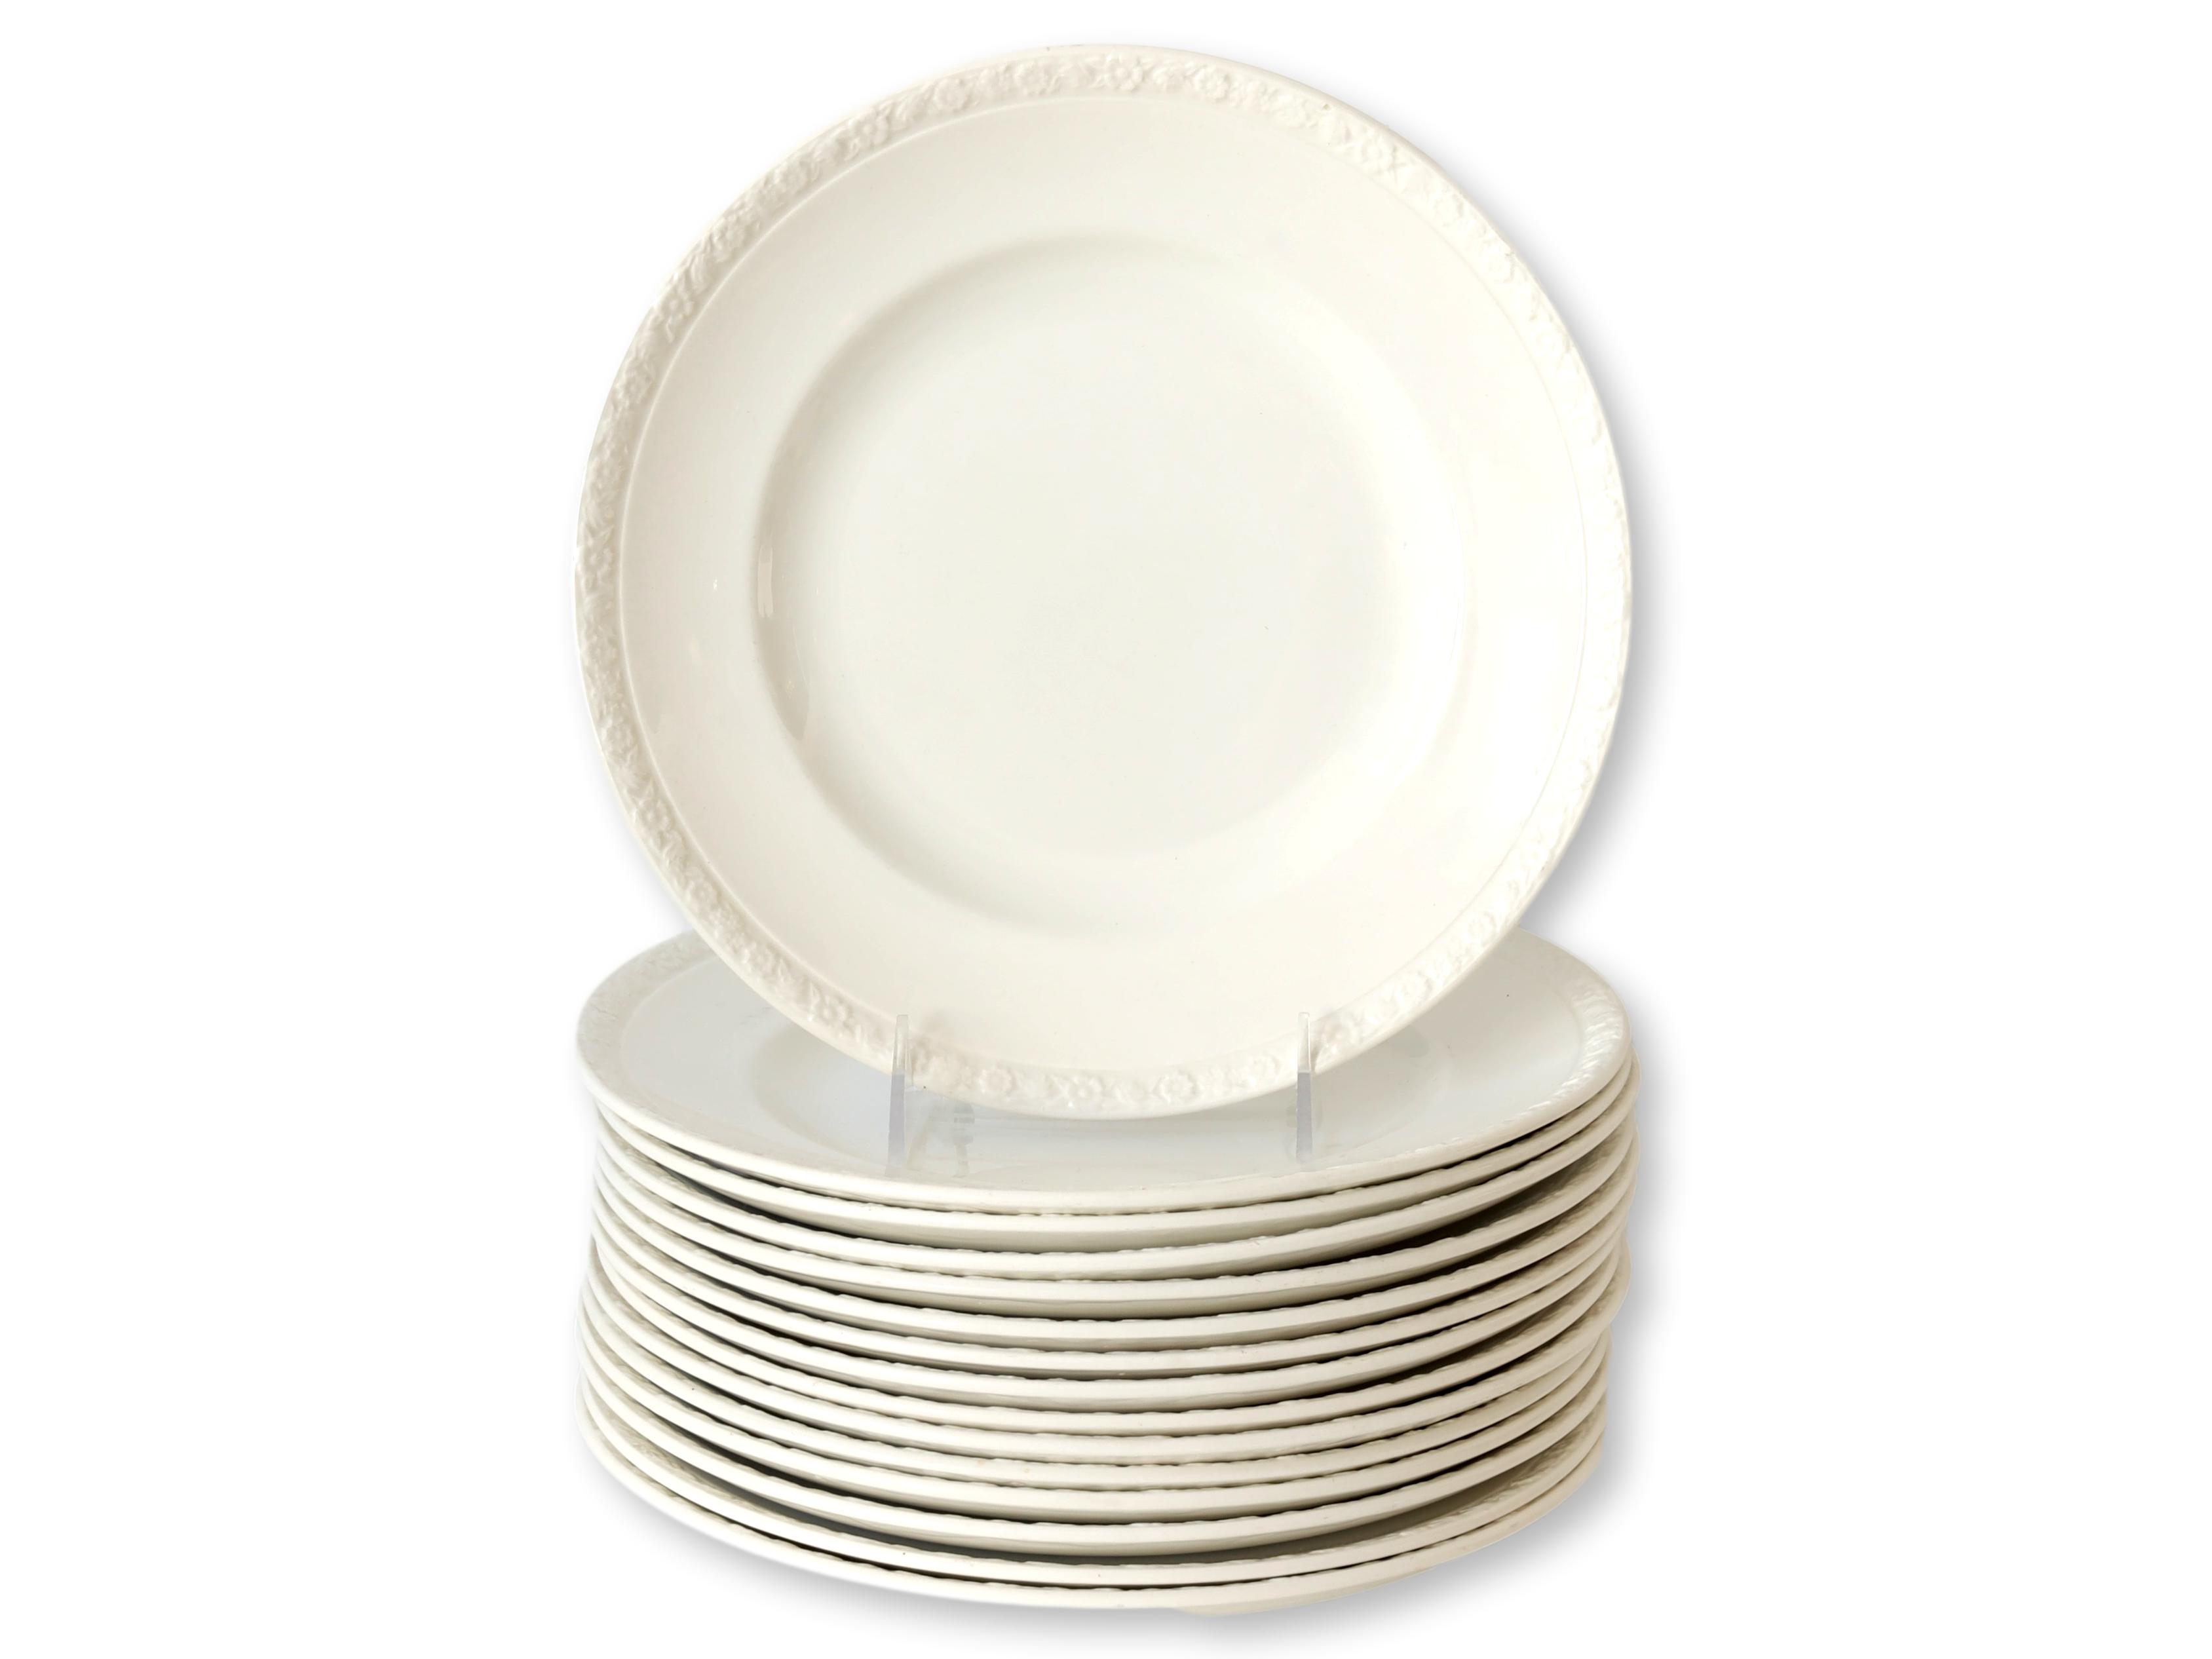 1960s Wedgwood White Dinner Plates, S/15~P77666933